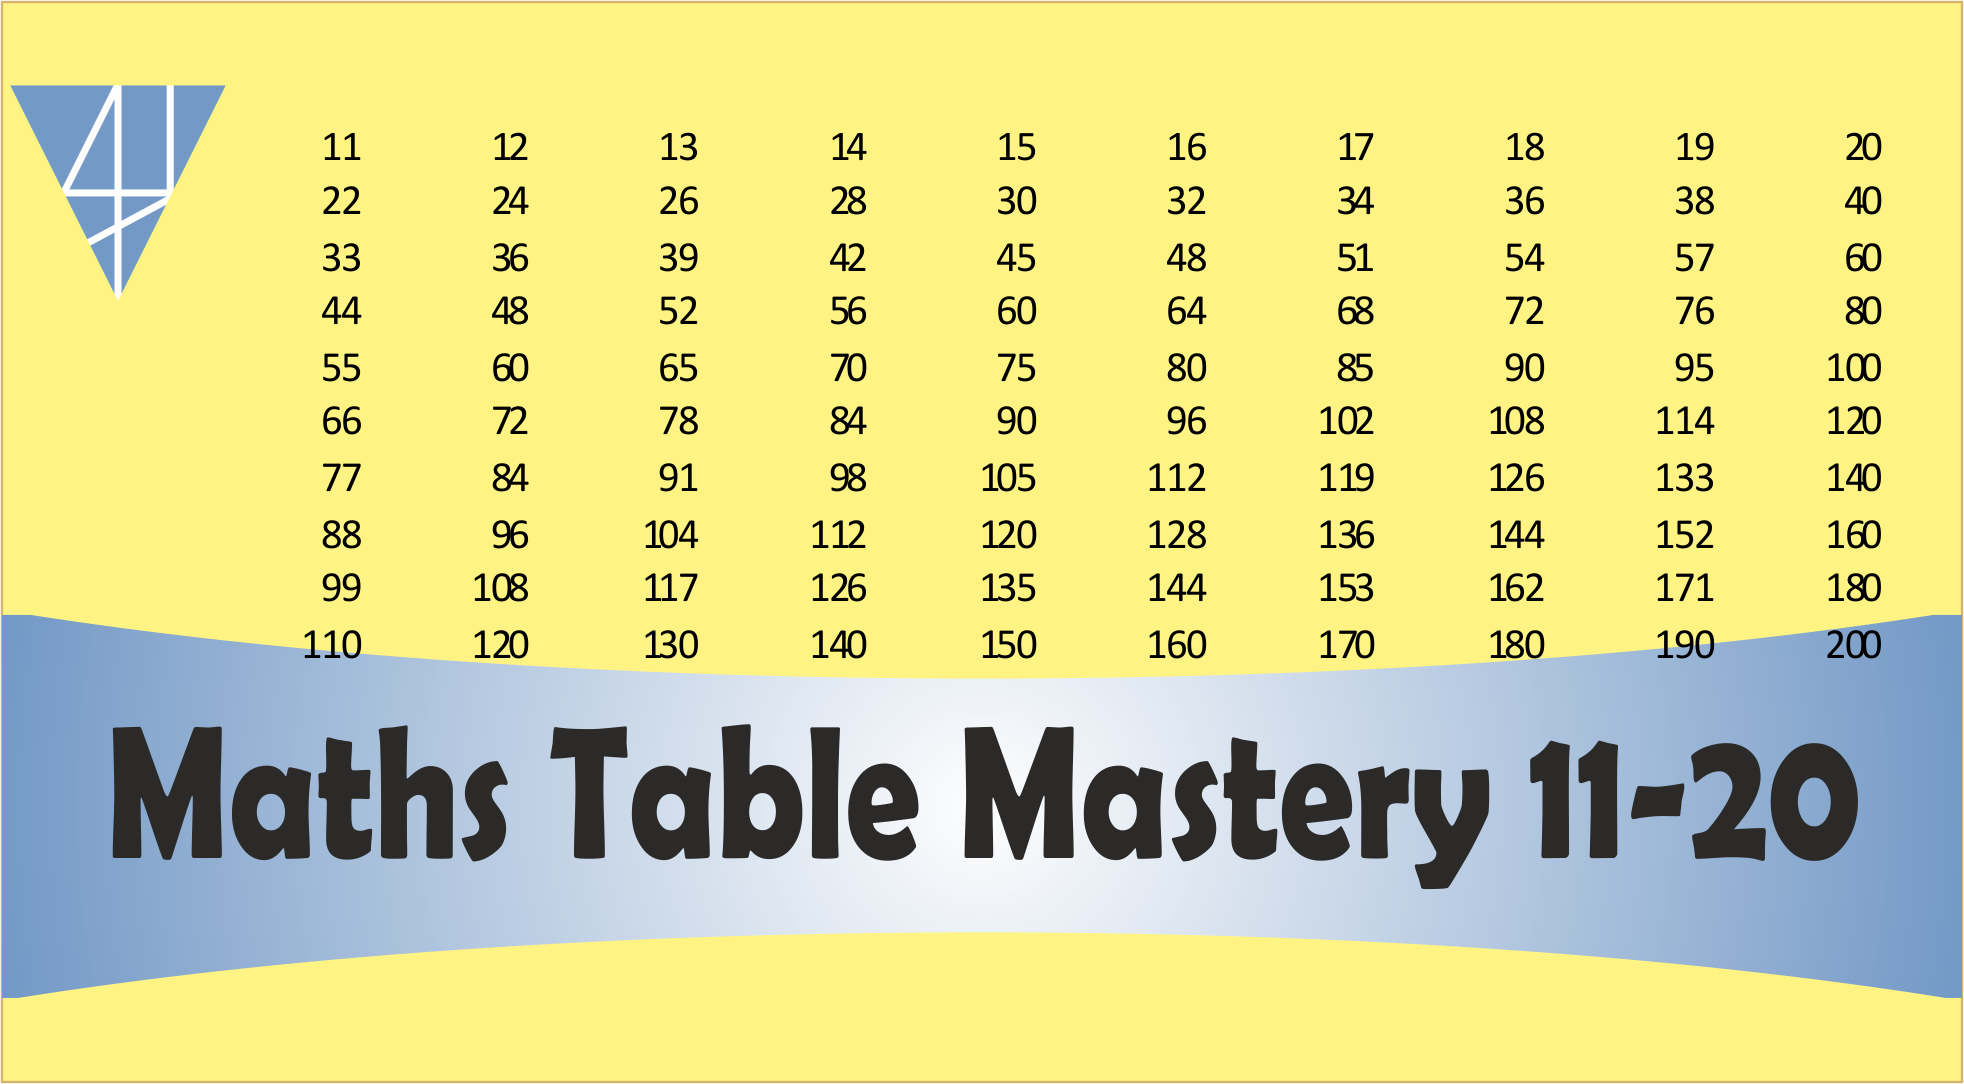 BMS3-Maths Table Mastery Course – (11-20)